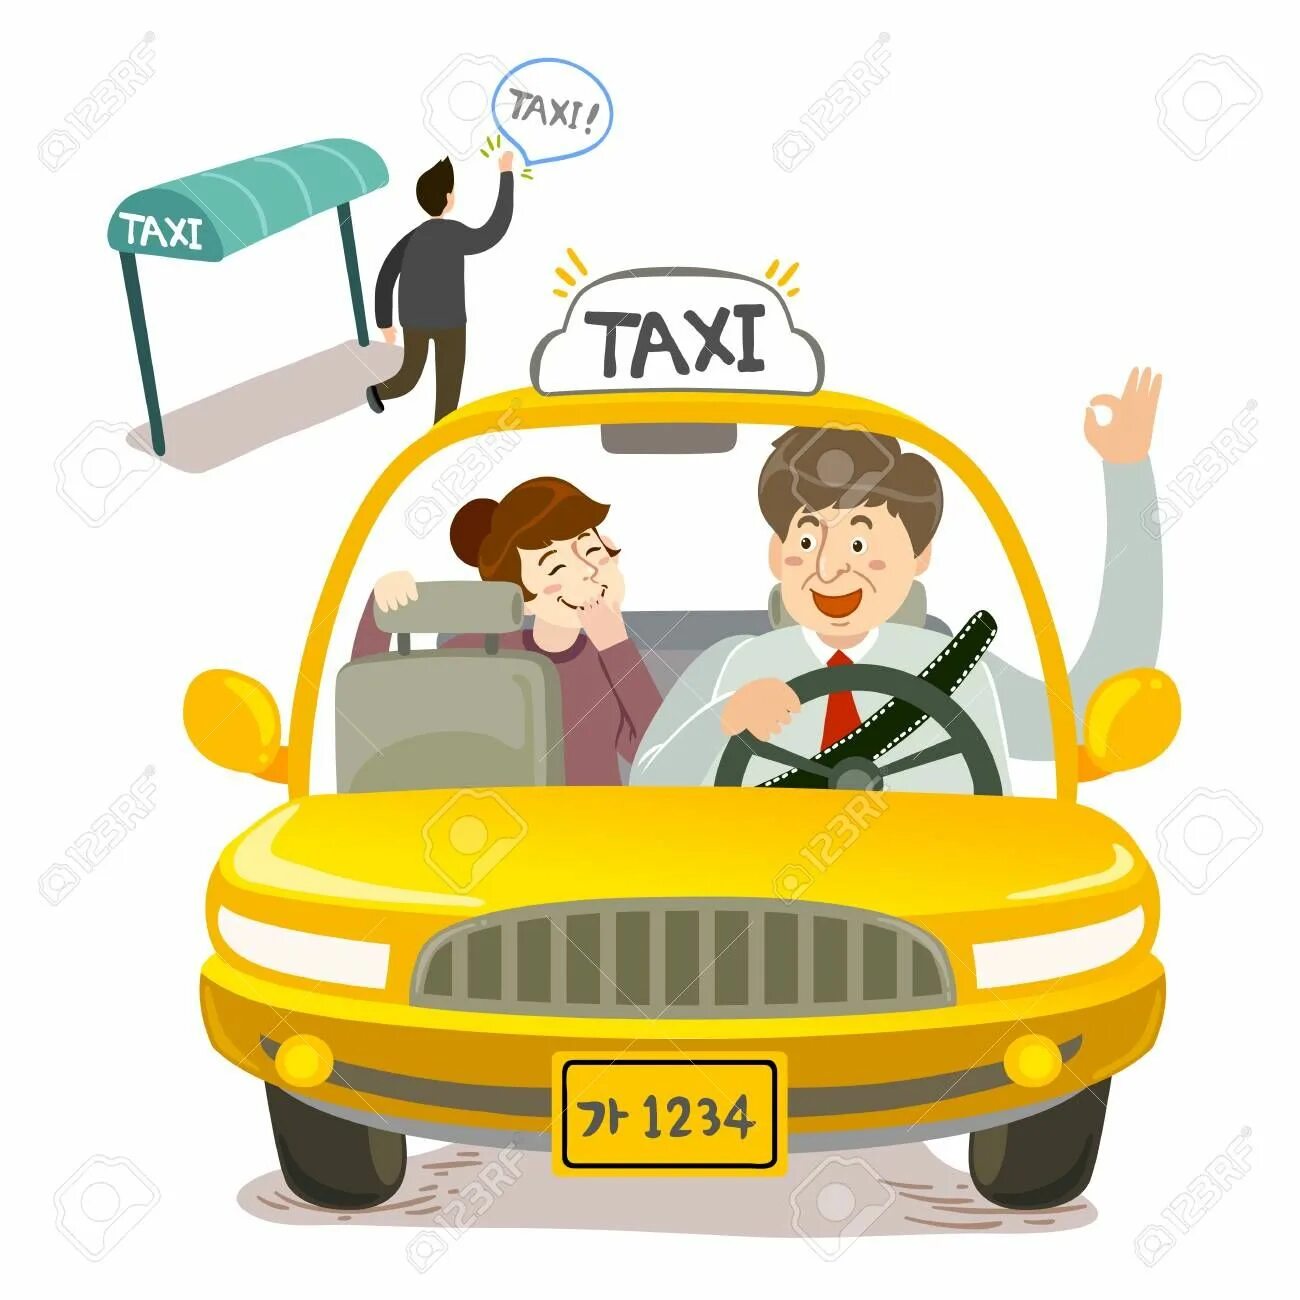 He took a taxi. Франшиза такси иллюстрация. Нарисовать такси работу. Человек в такси арт. Иллюстрация вечеринка стиль Taxi.